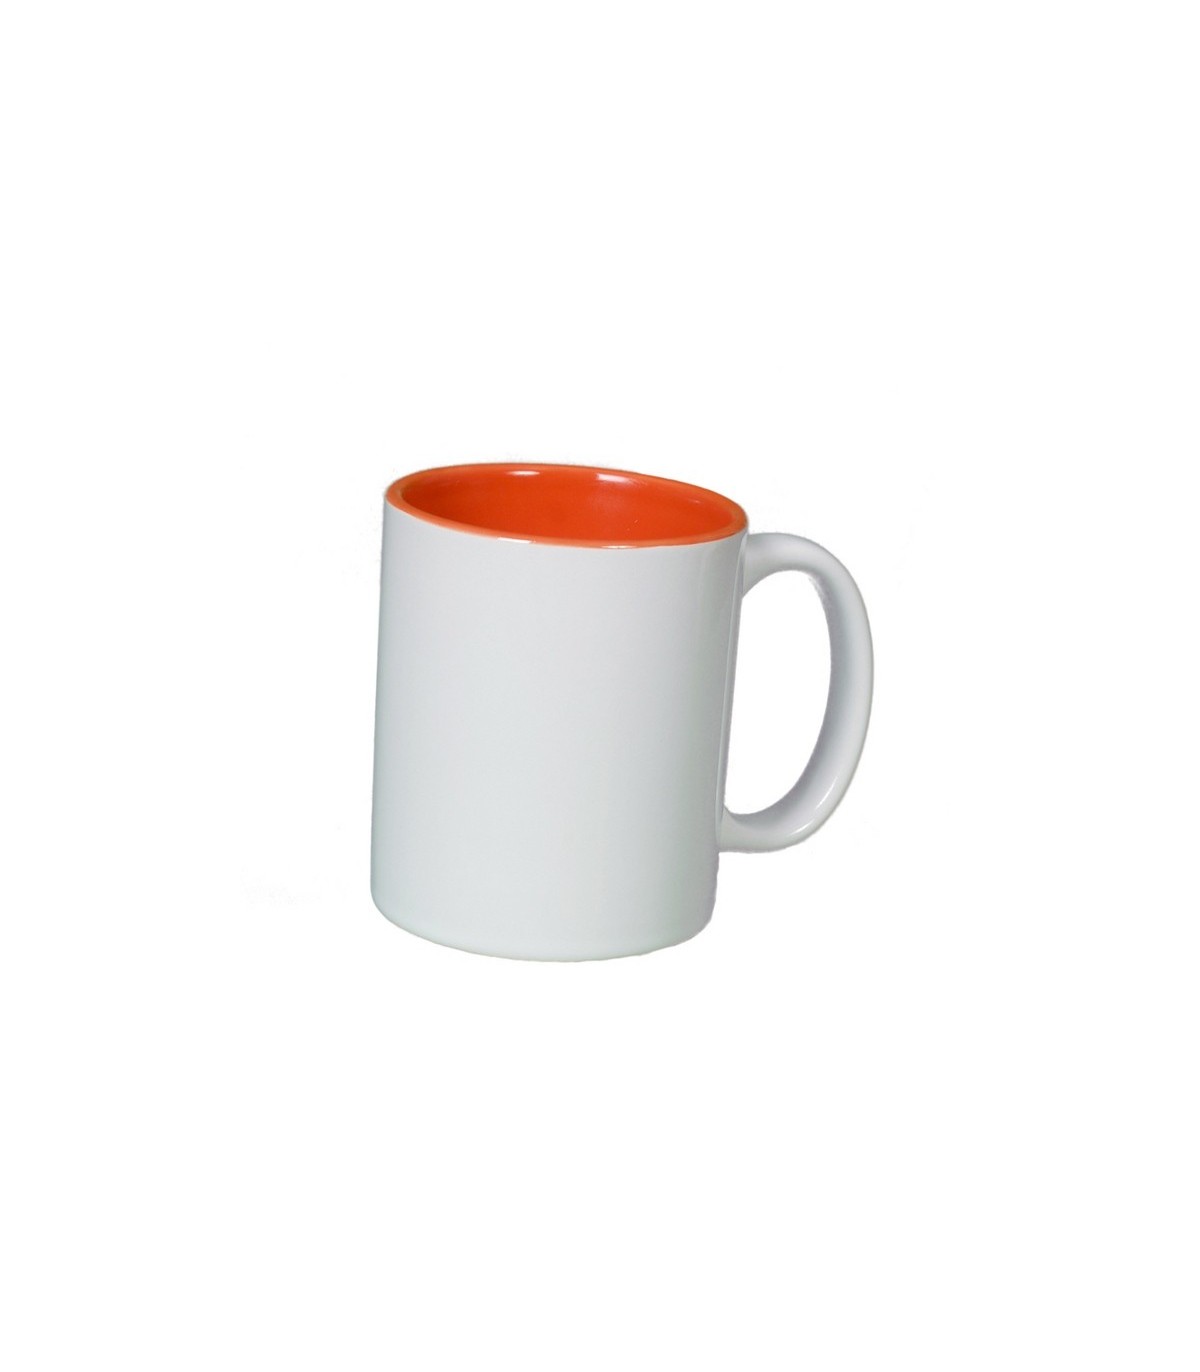 Mug à personnaliser orange pour offrir et faire plaisir! Idée cadeau